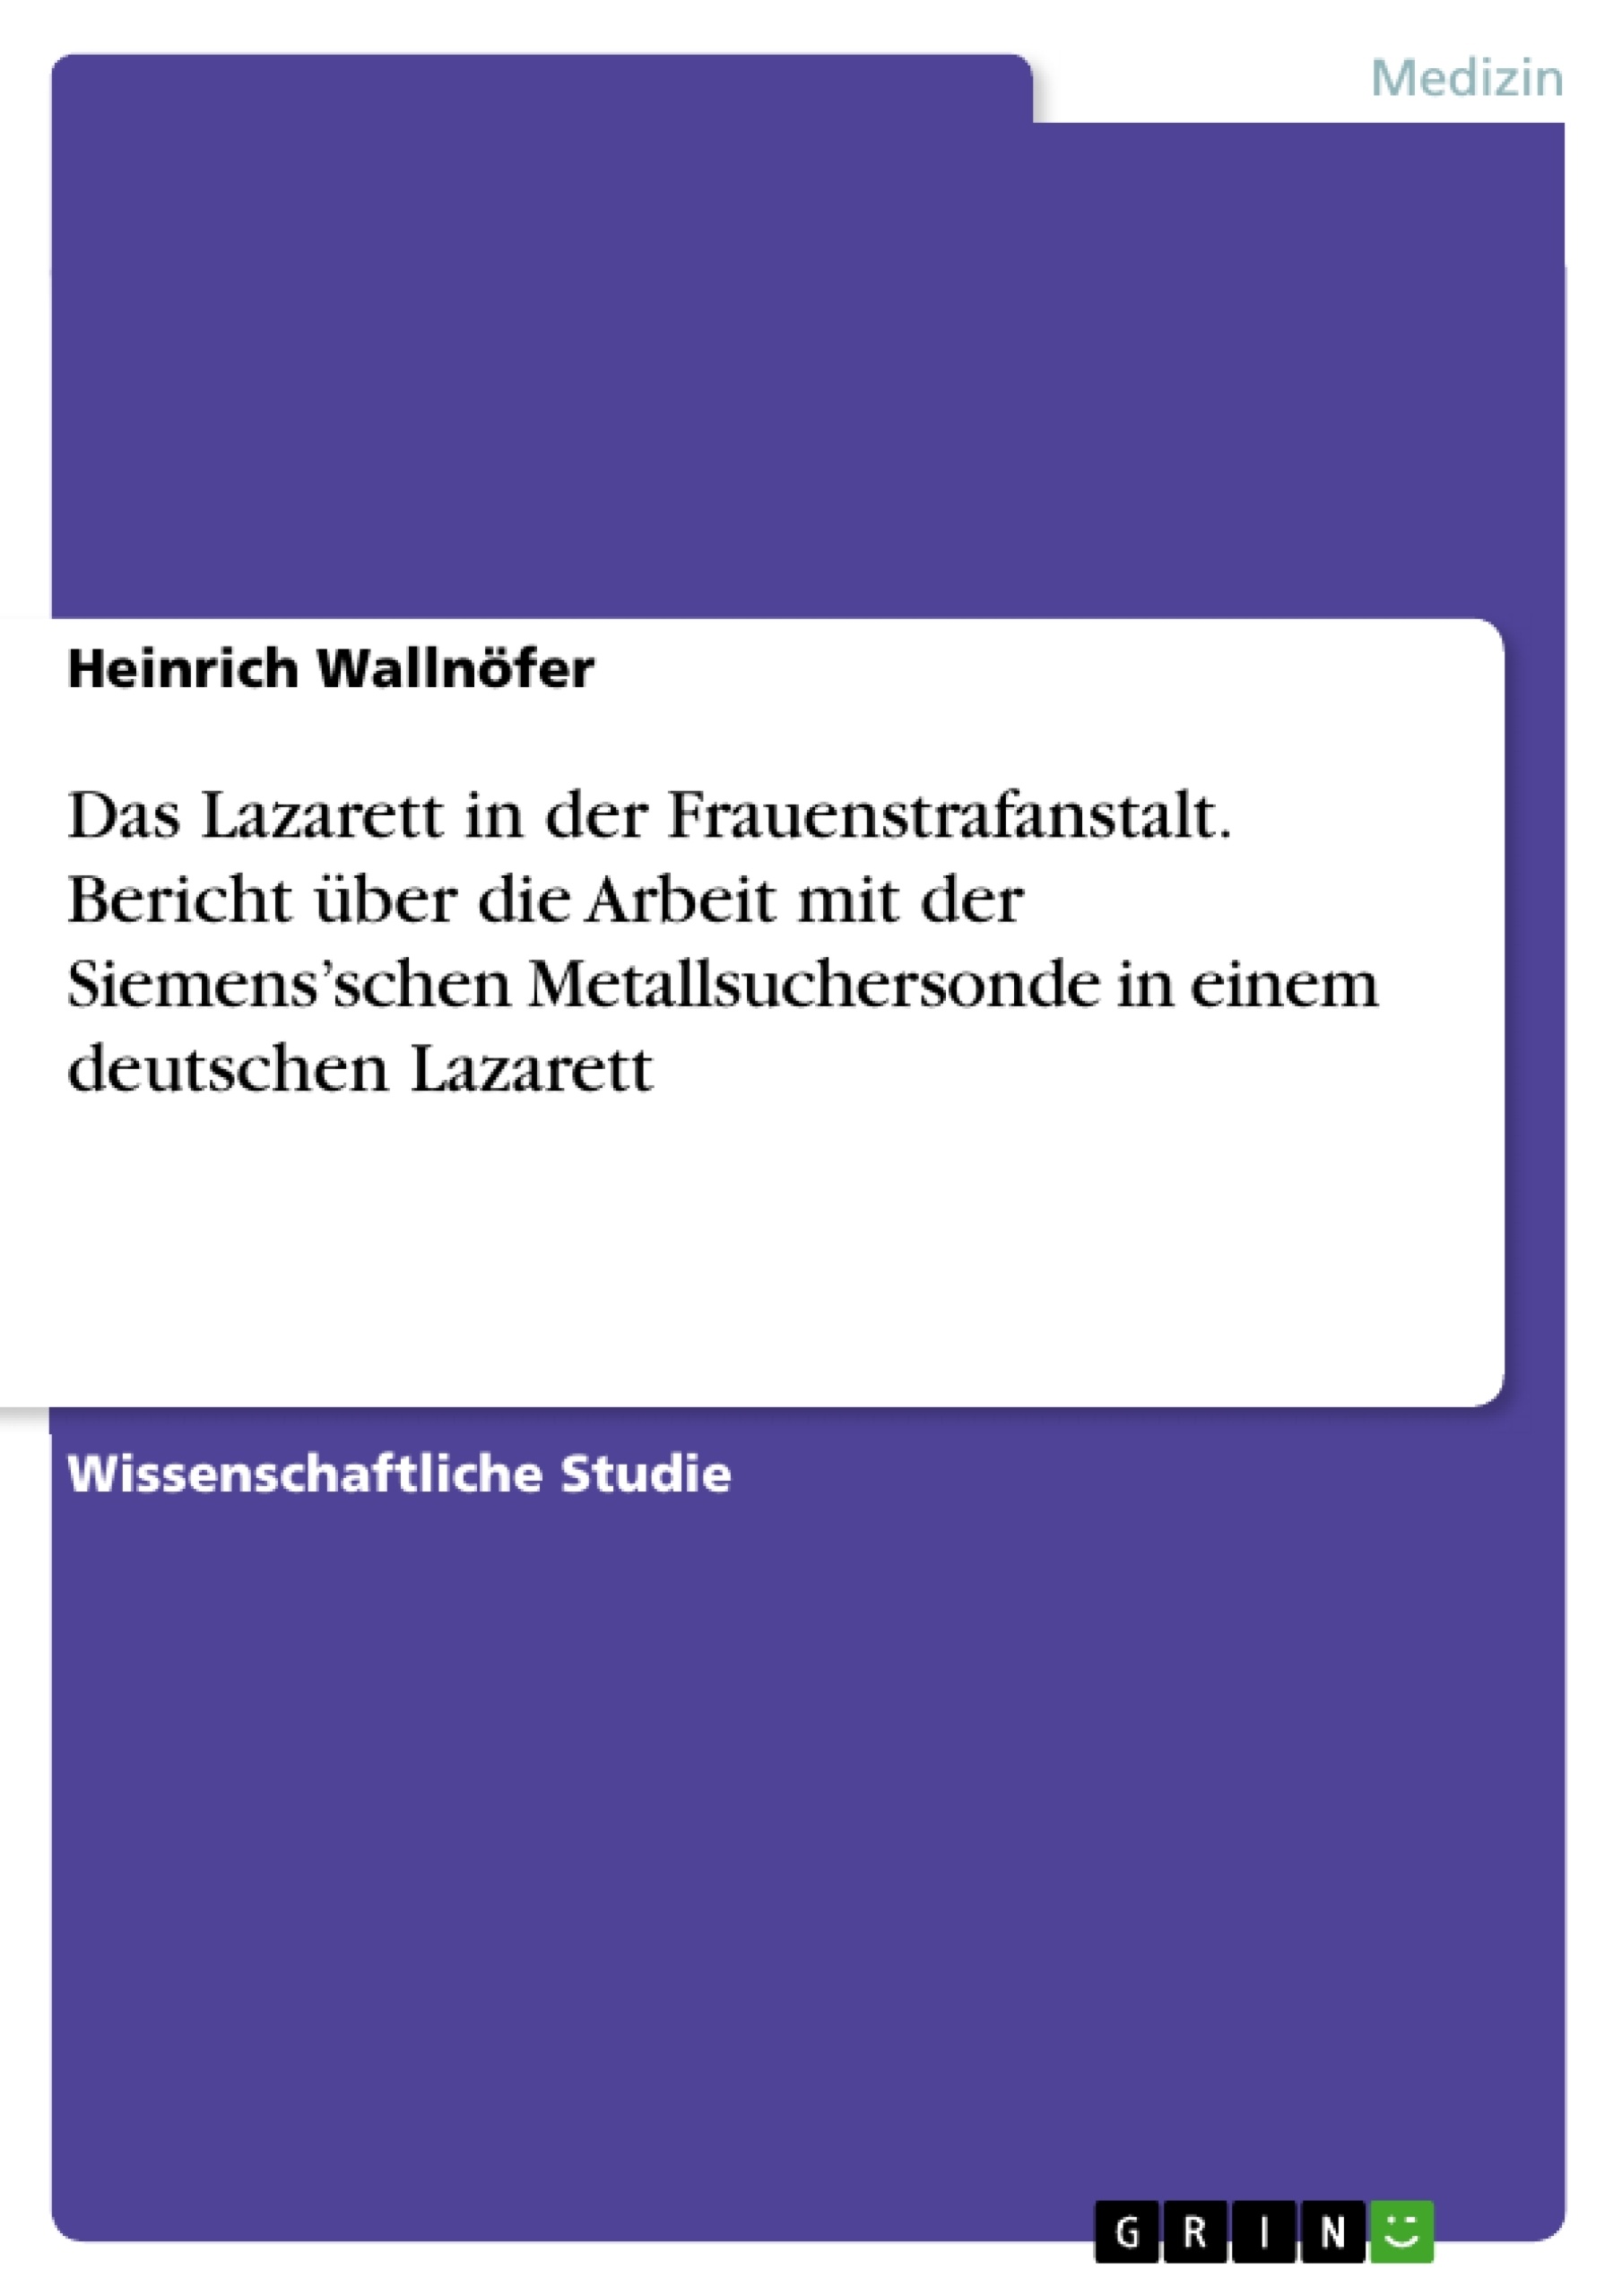 Title: Das Lazarett in der Frauenstrafanstalt. Bericht über die Arbeit mit der Siemens’schen Metallsuchersonde in einem deutschen Lazarett